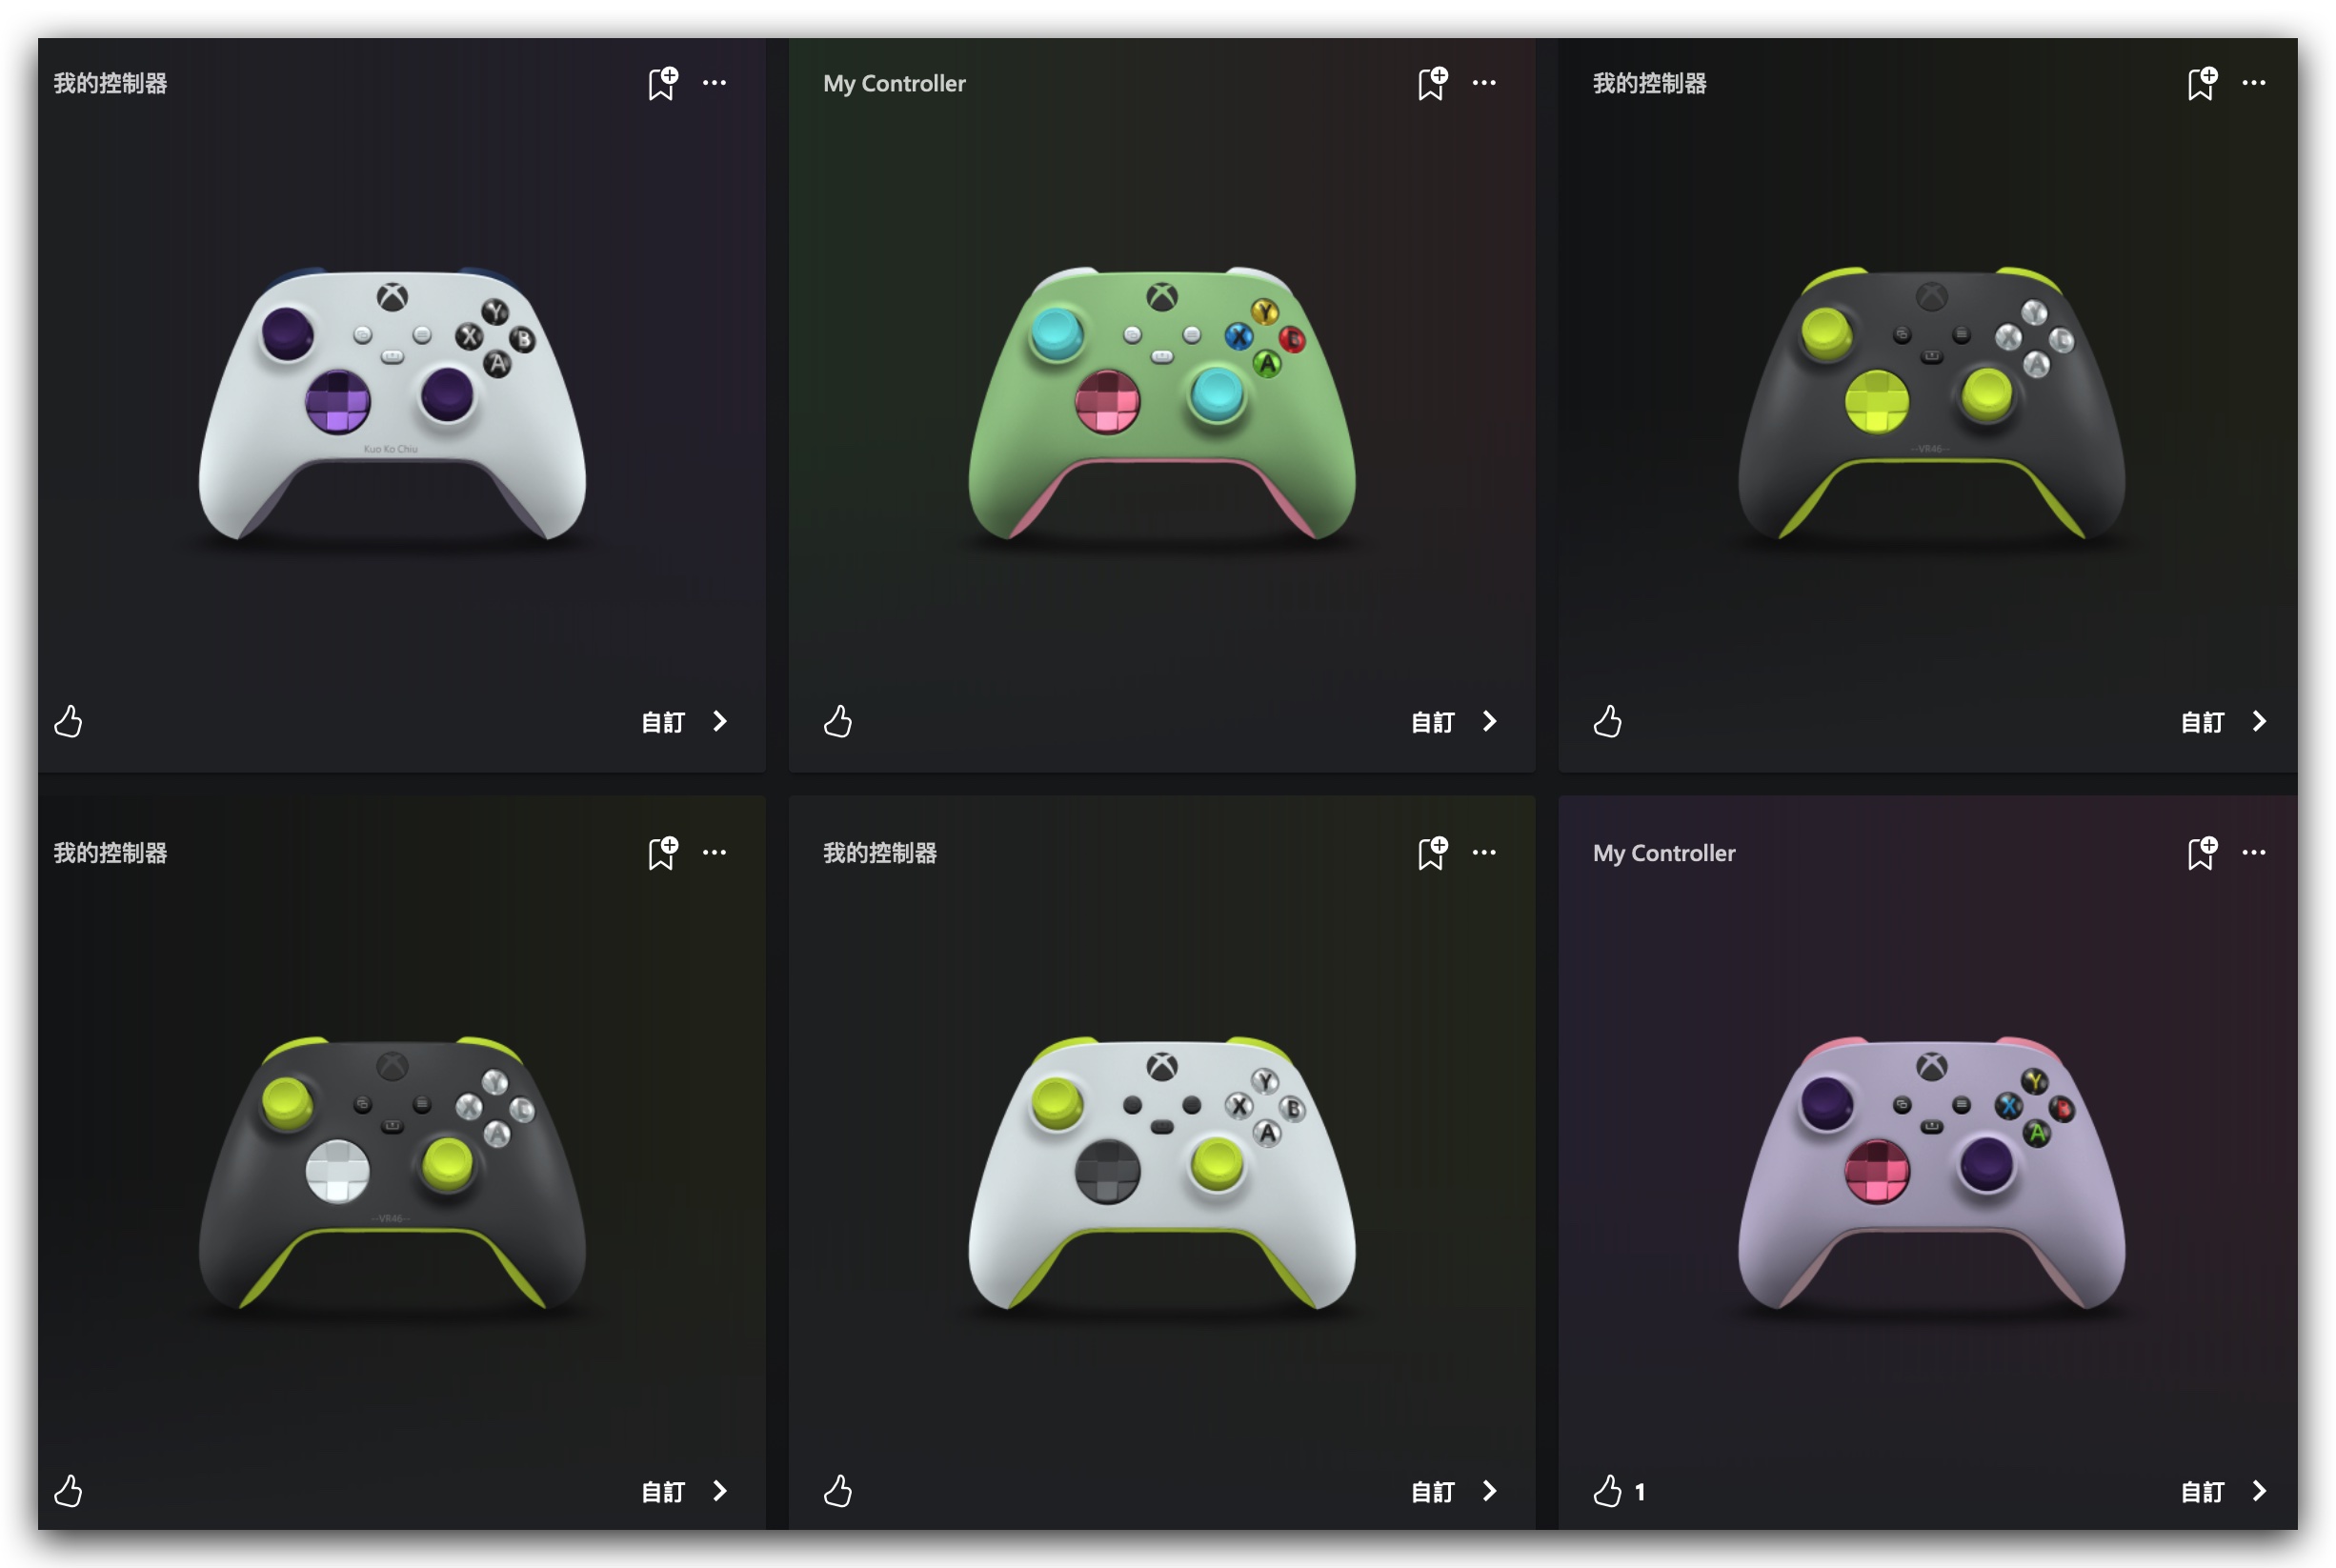 Xbox Design Lab 遊戲手把控制器